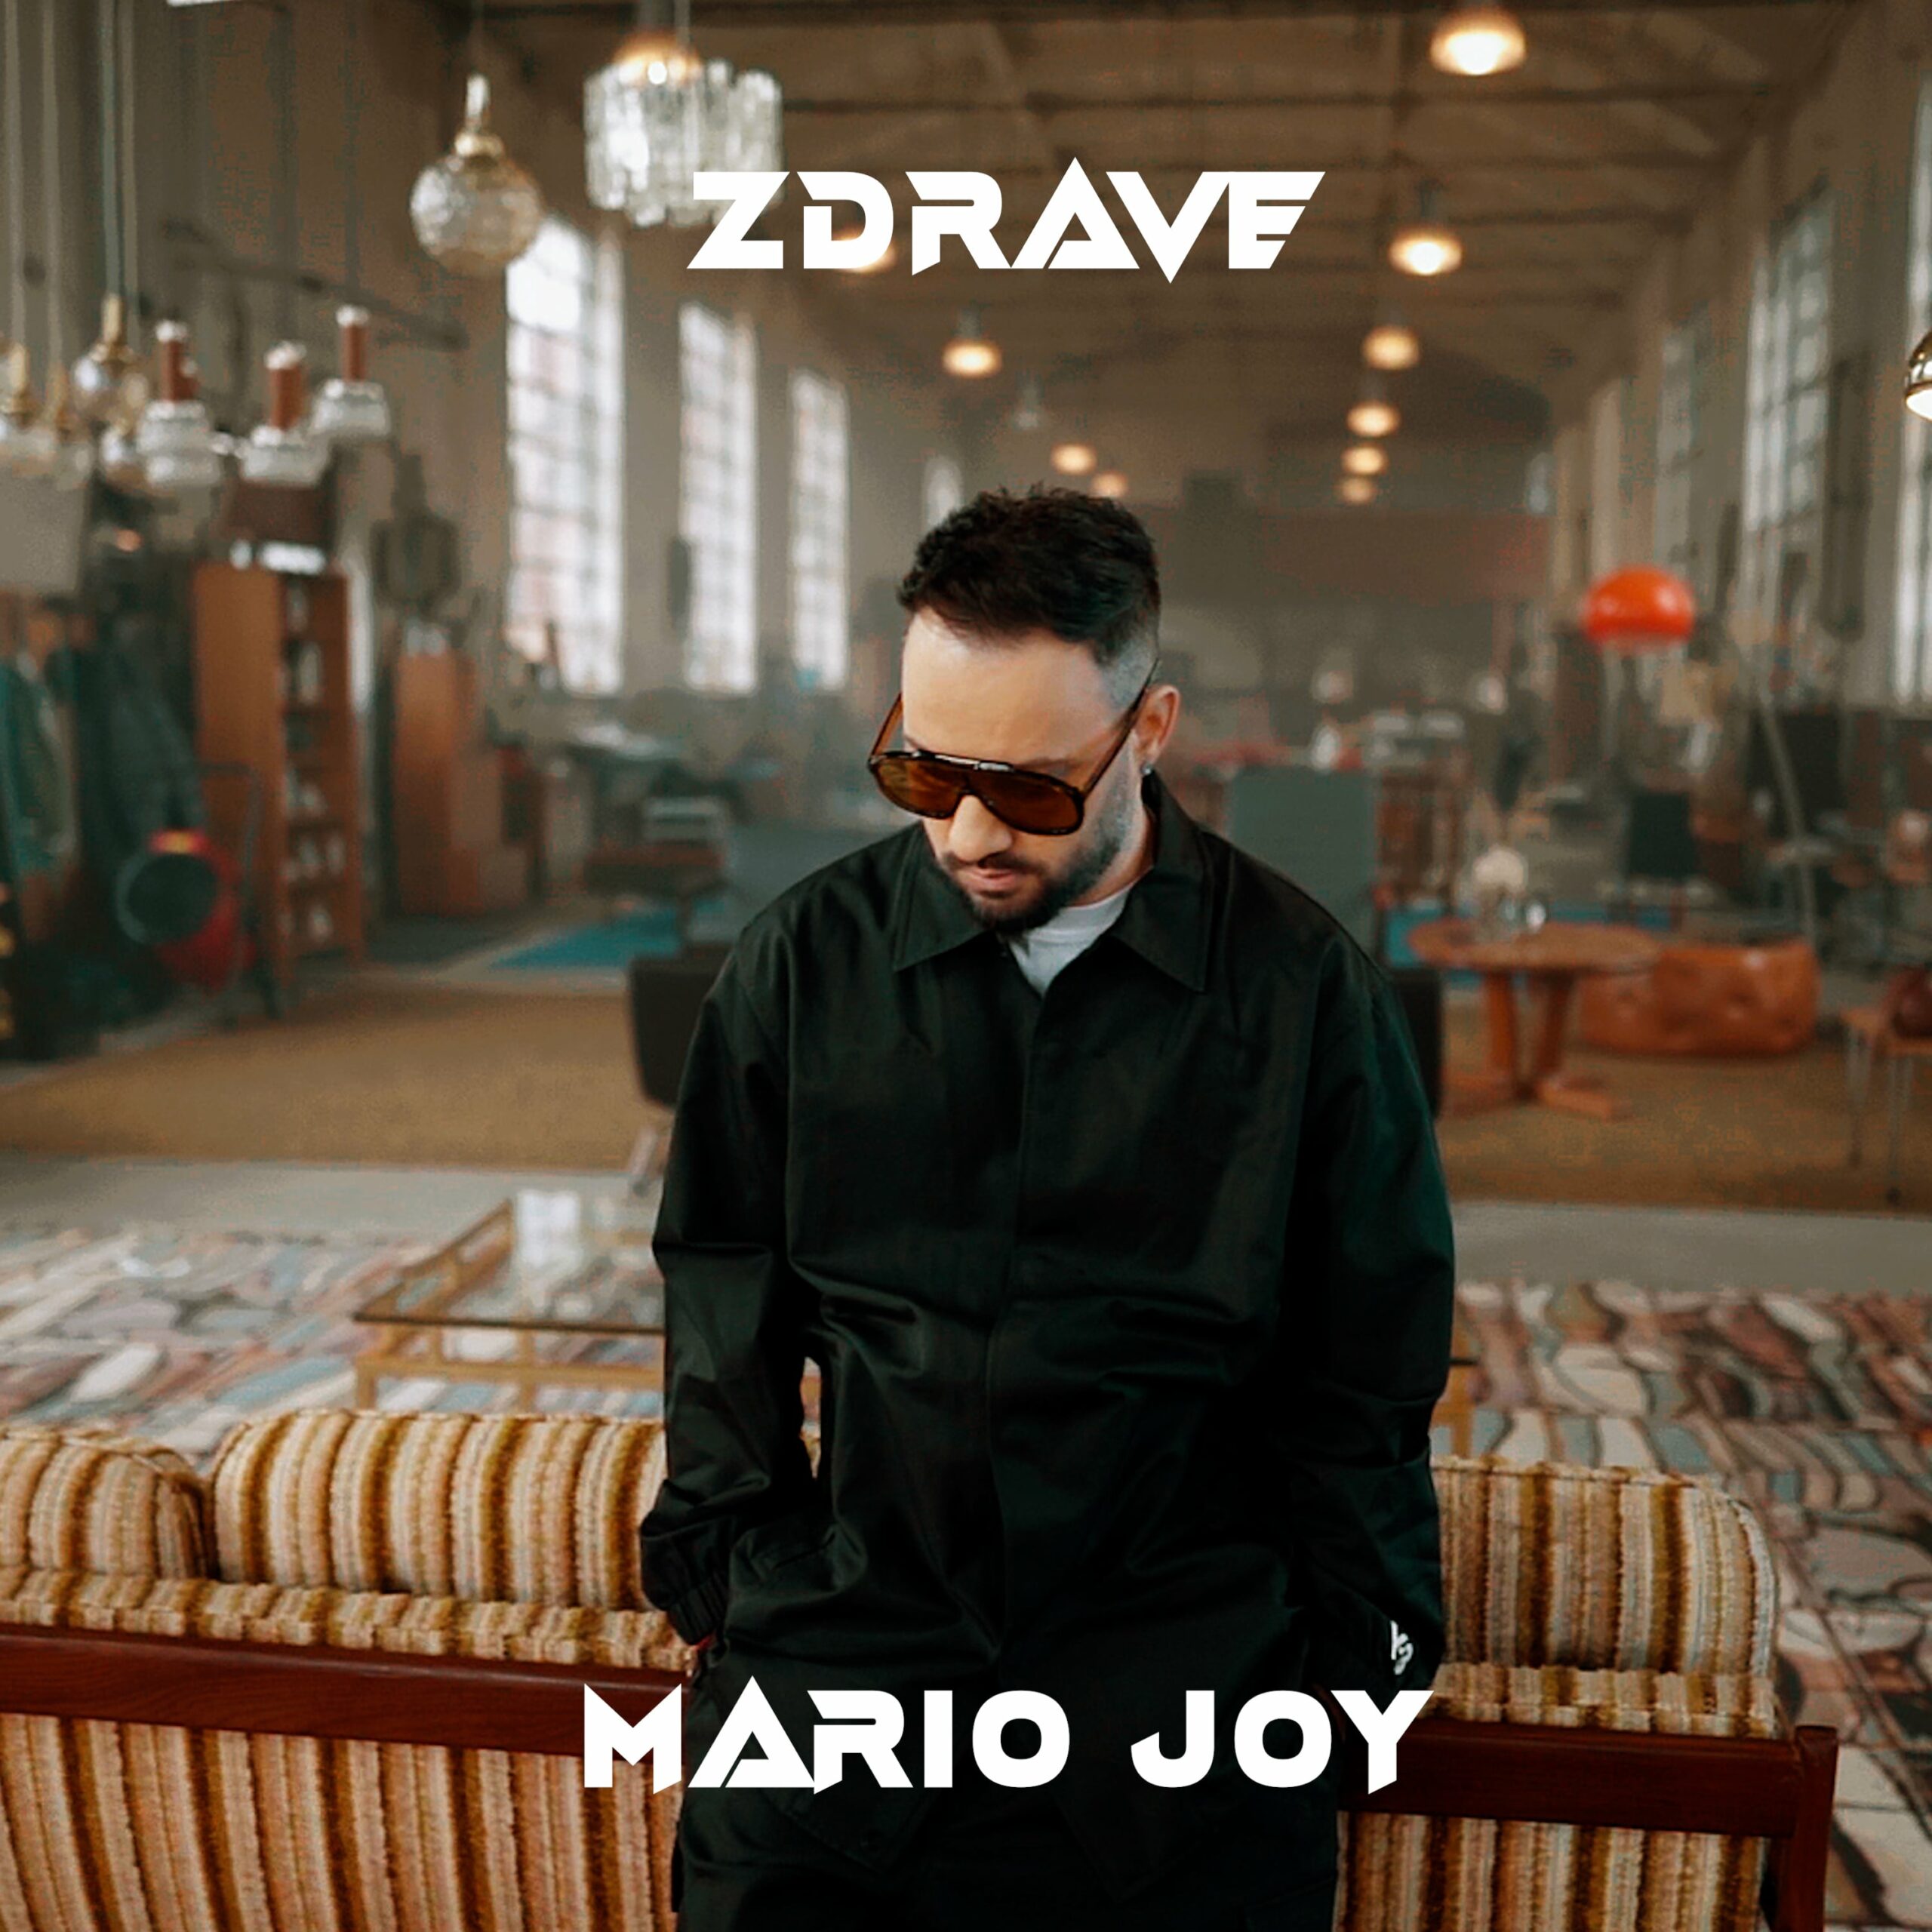 #premieră. „Zdrave”, noul videoclip al lui Mario Joy se vede în exclusivitate pe zutv.ro